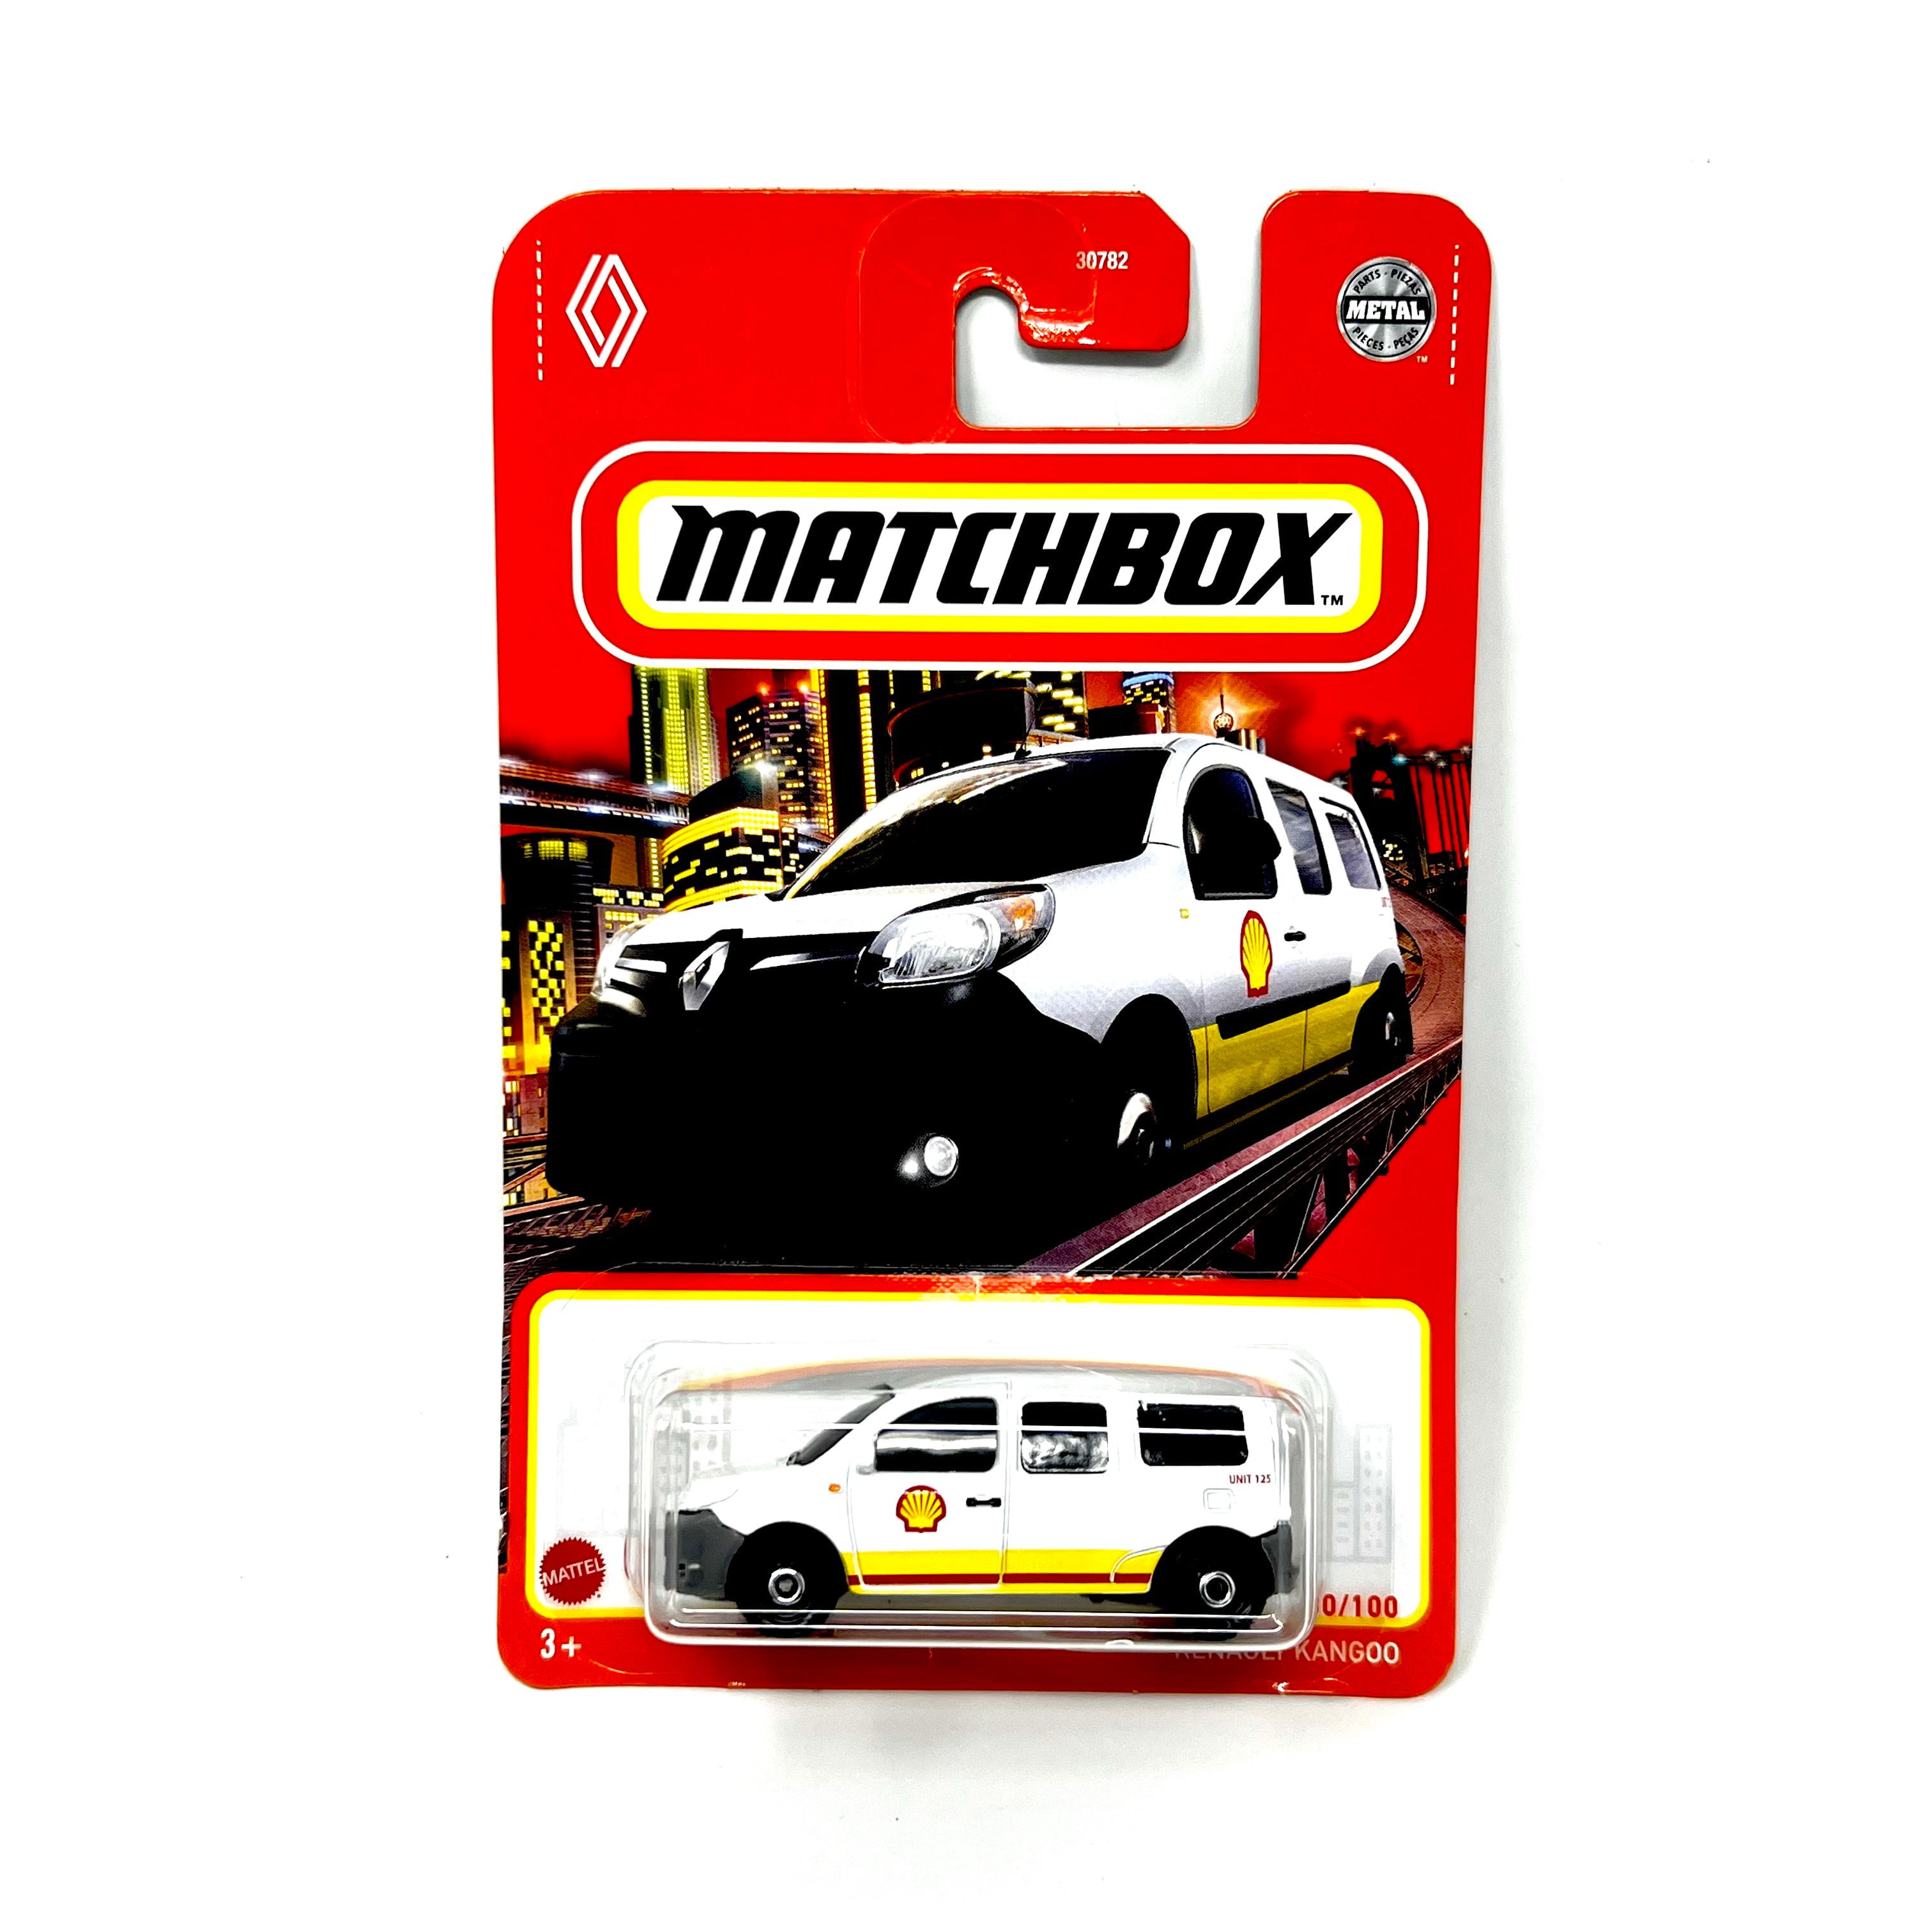 Matchbox Shell Gas Renault Kangoo Walmart.com